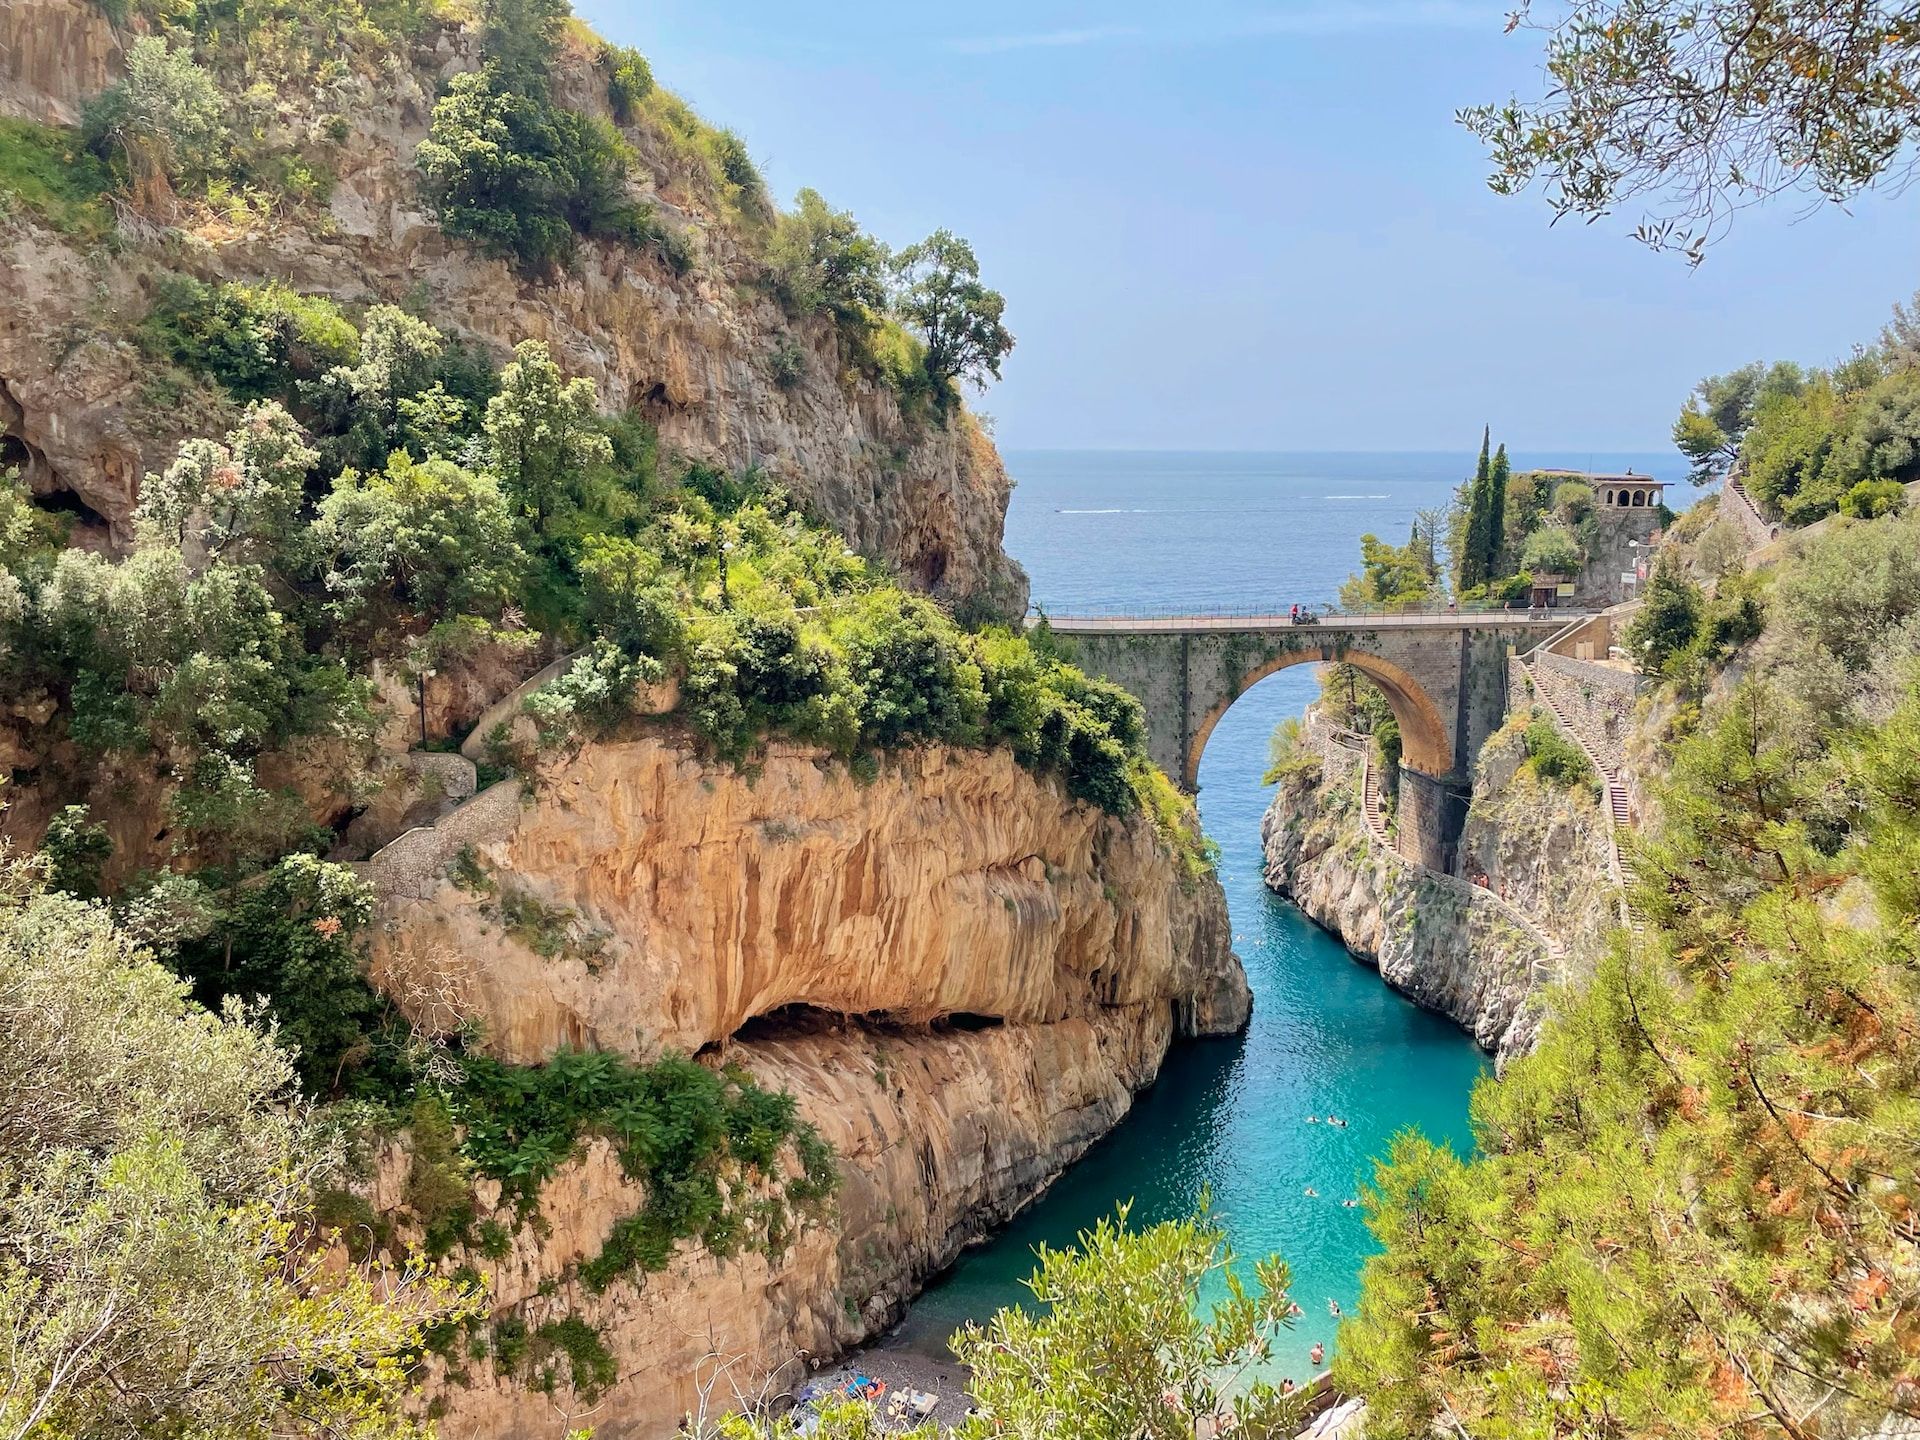 The Fiordo di Furore Bridge near the beach in the Amalfi Coast